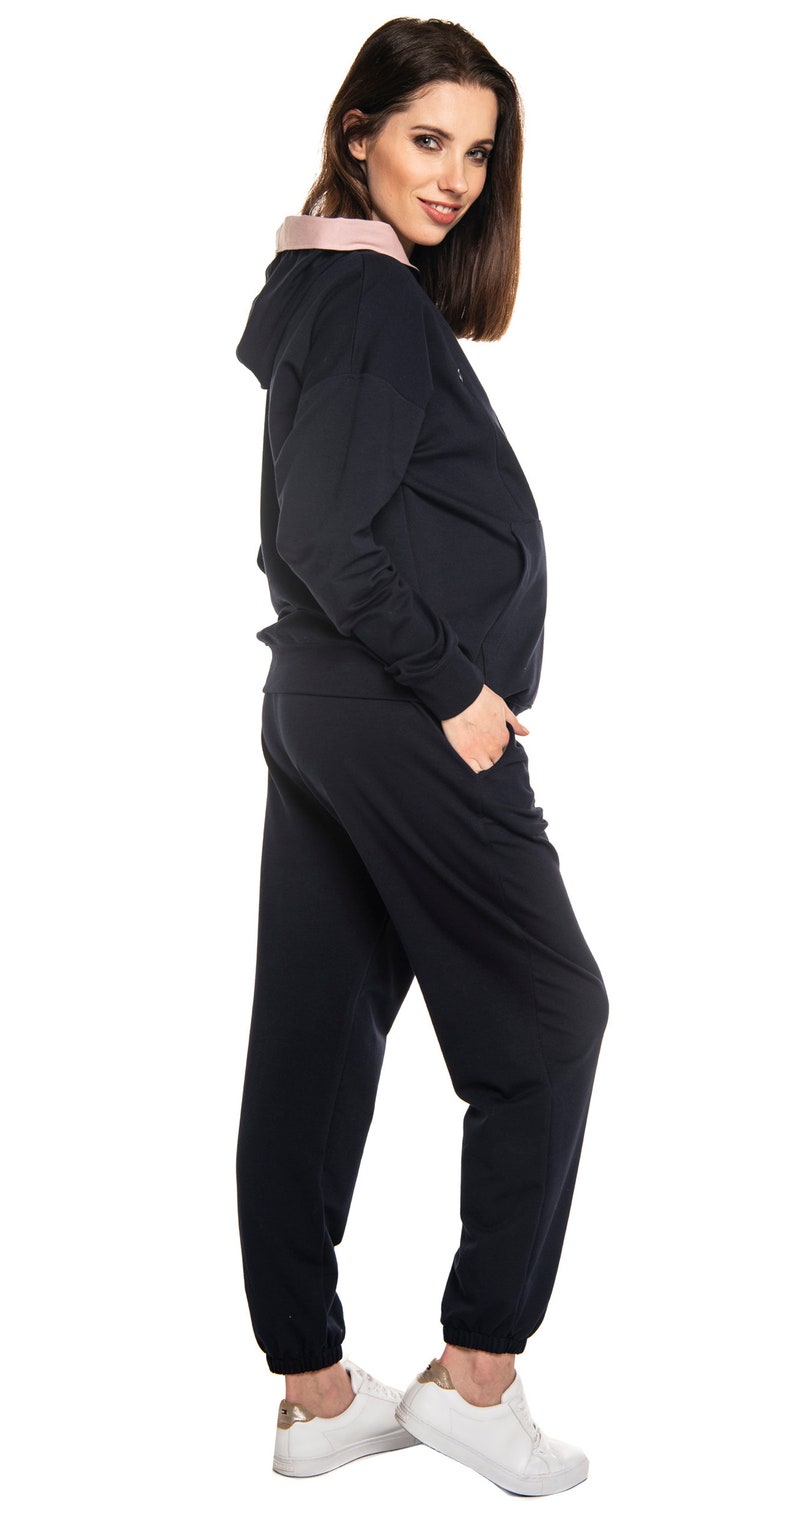 Umstandsjogginganzug mit Stillfunktion Joggingsanzug für Schwangere zum Stillen Jogginghose Sweatshirt Stillshirt Modell: JOY von Torelle Bild 3